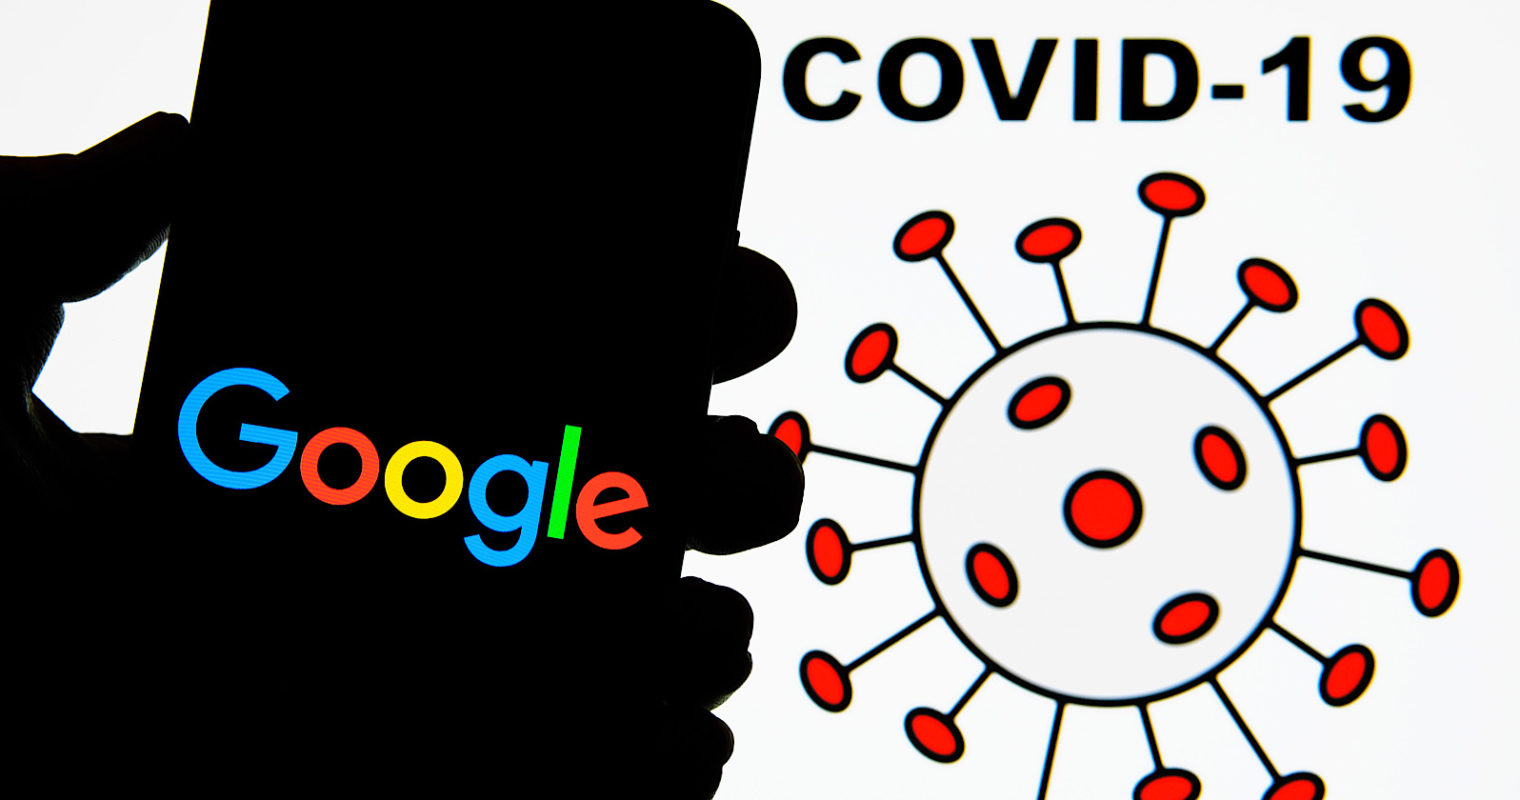 COVID-19 đã thay đổi xu hướng và mô hình tìm kiếm trên Google như thế nào- VIETADS